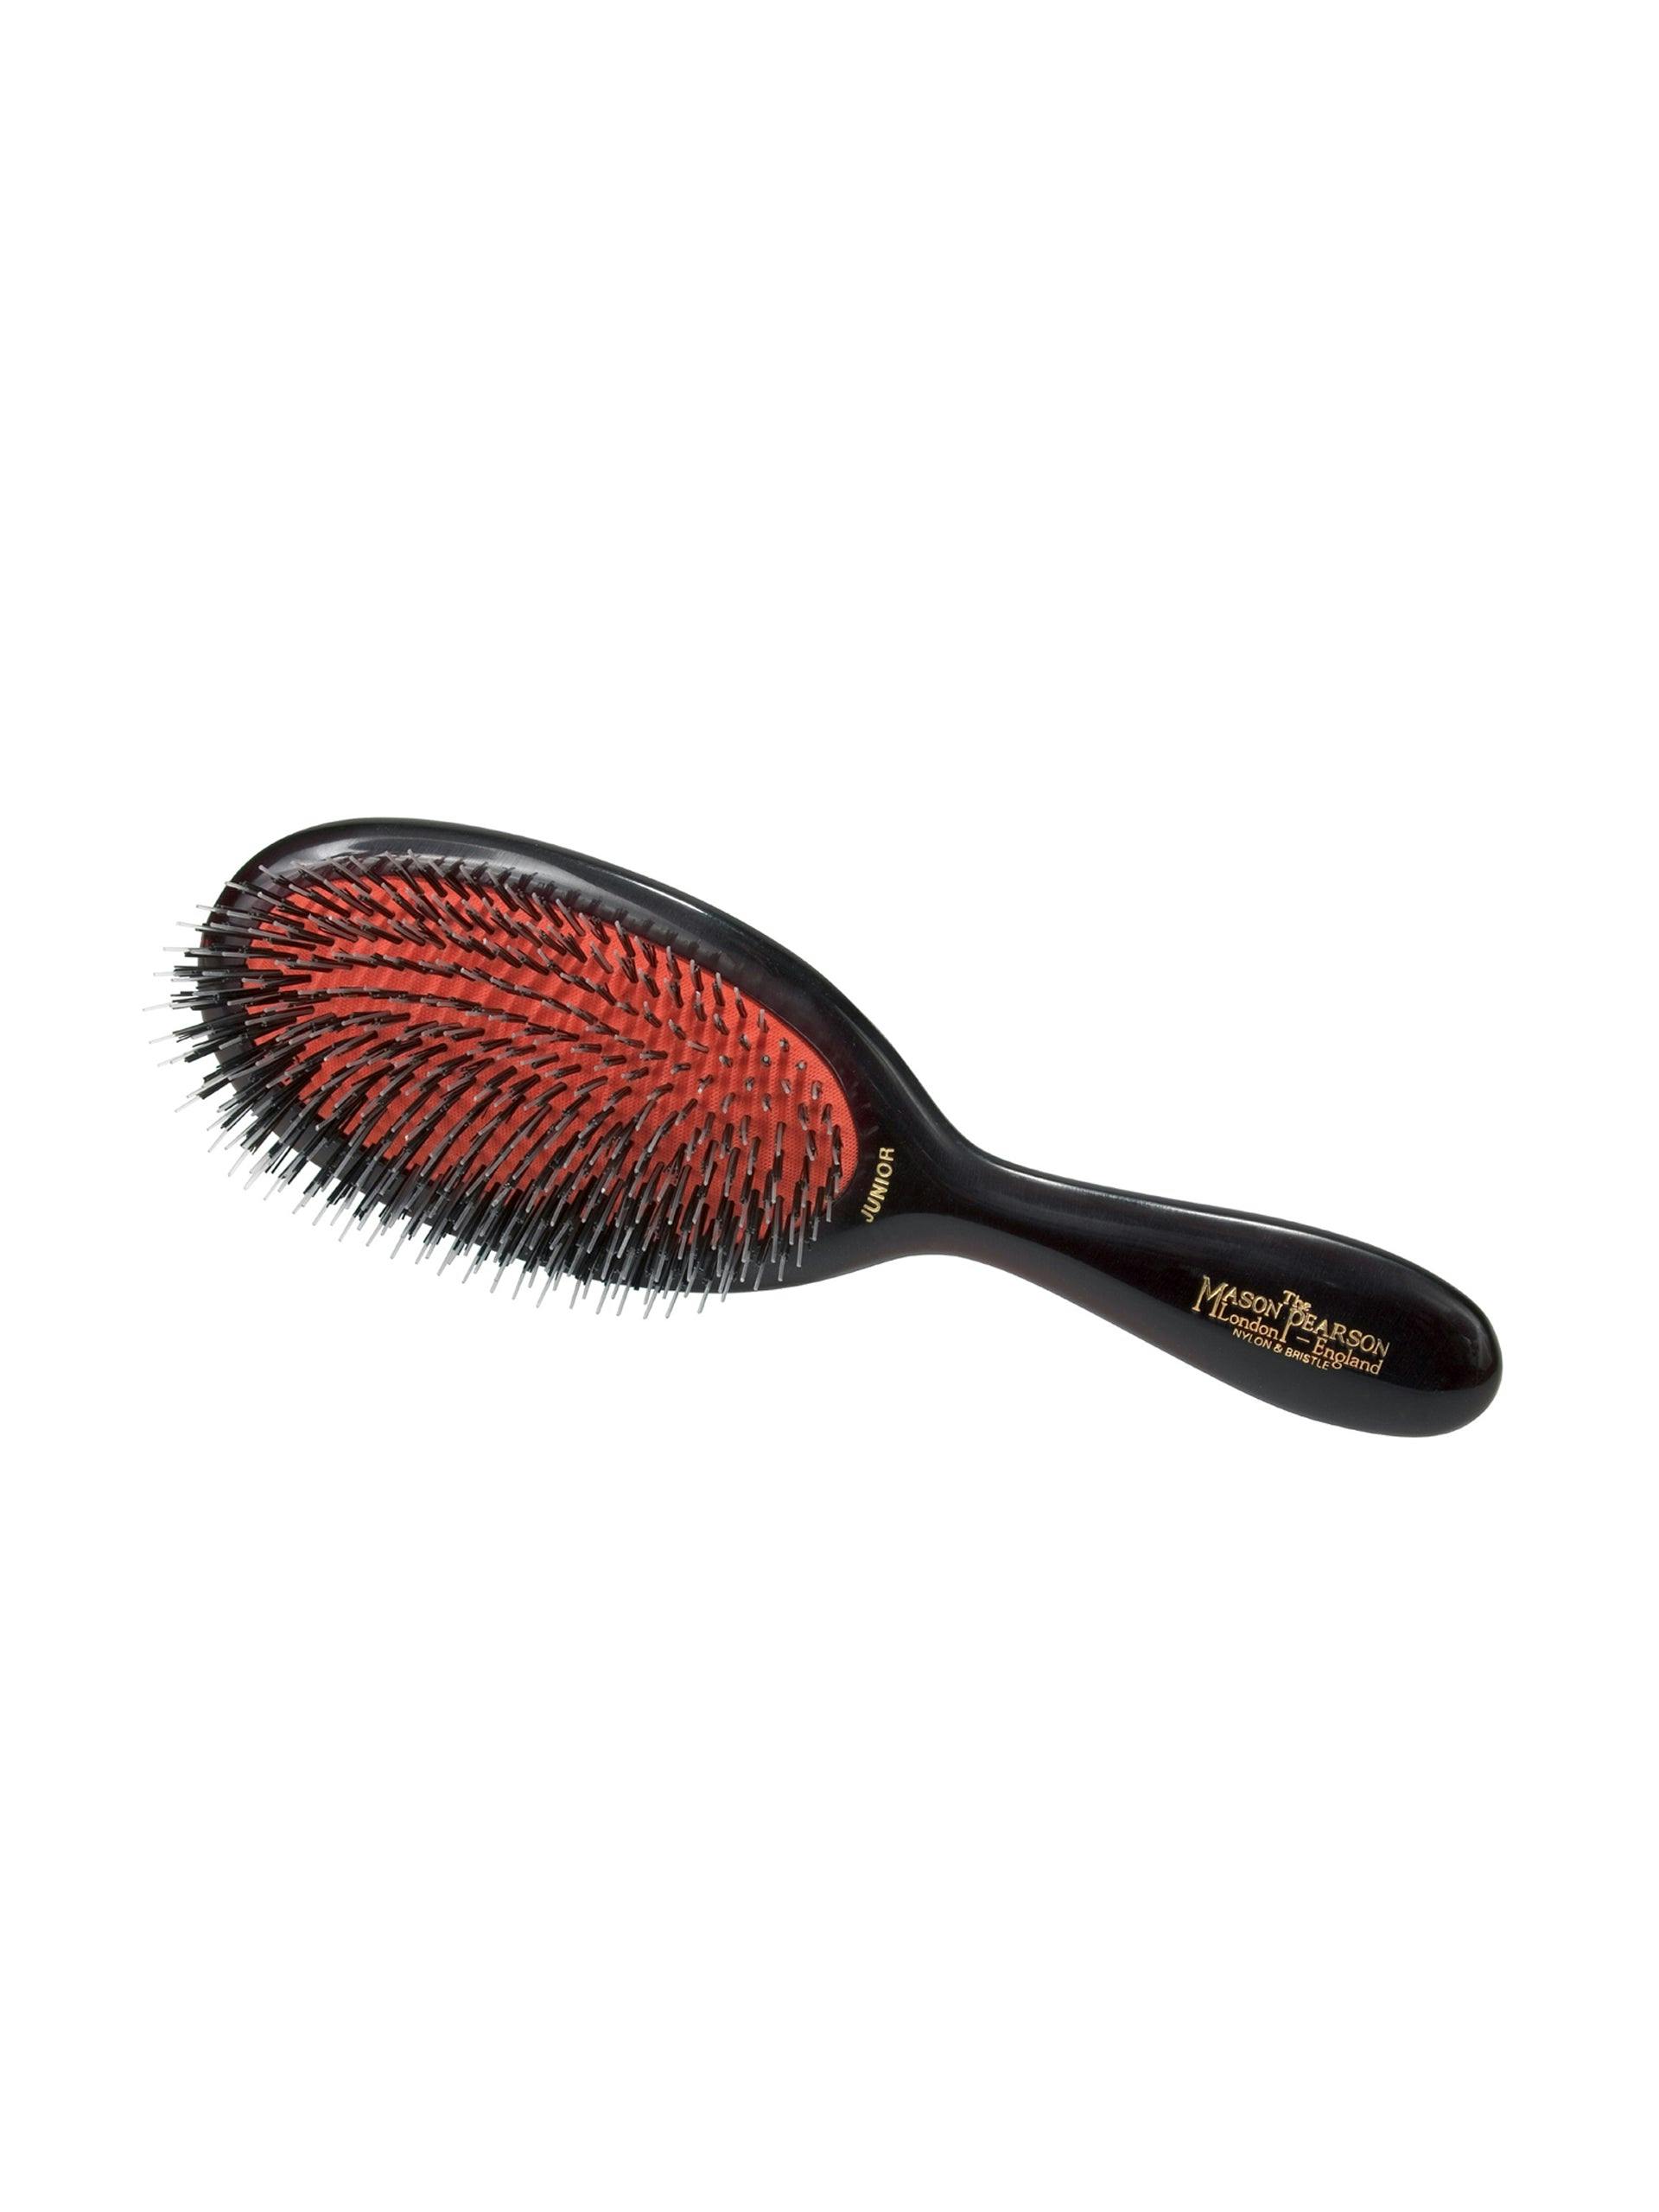 Bristle and nylon hairbrush